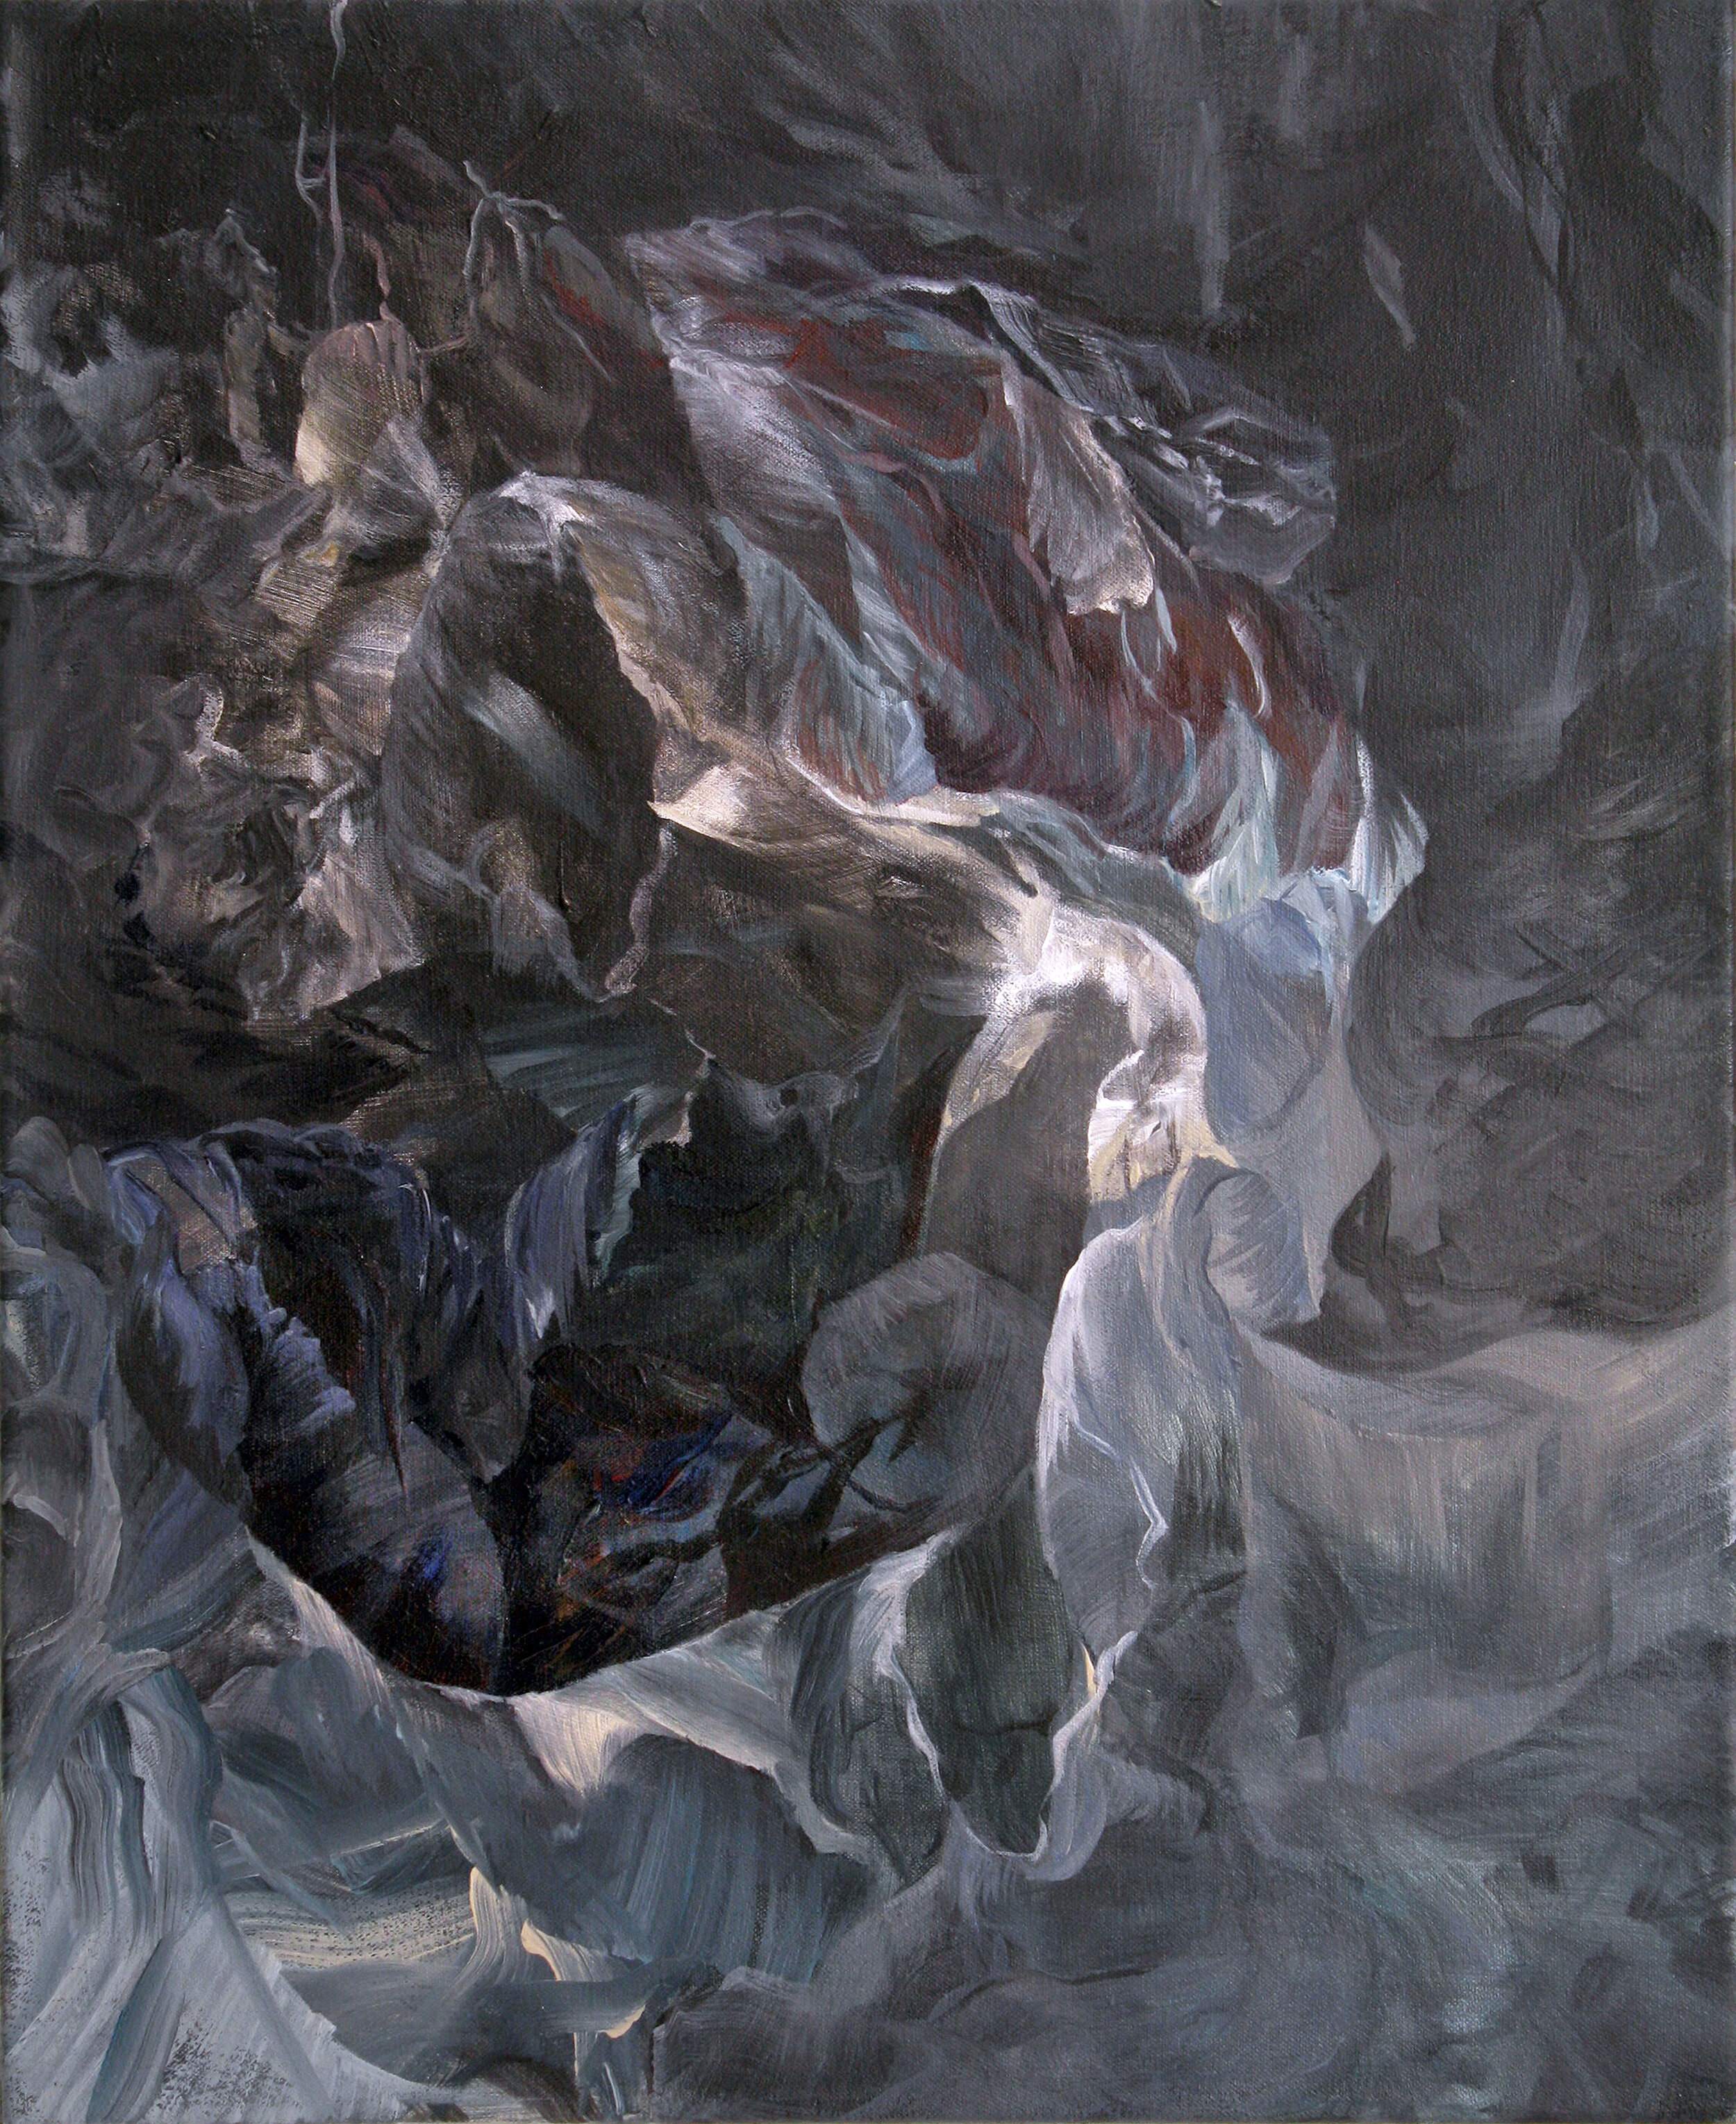   Hollow Ground , 2013  acrylic on canvas  22” x 18” 